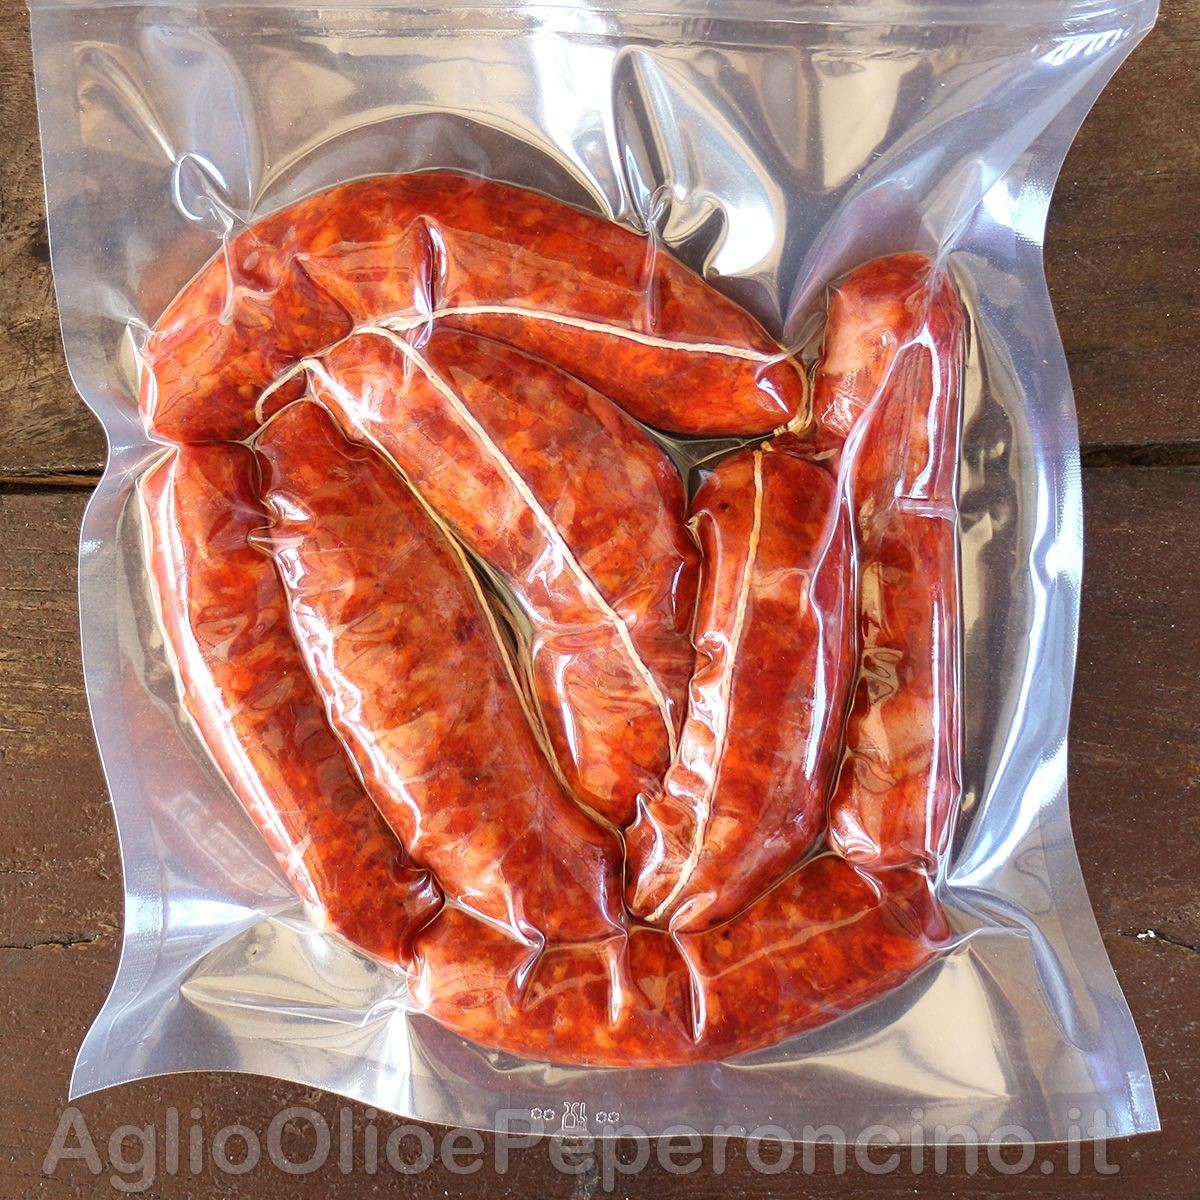 Salsiccia Fresca Piccante - Al peperoncino rosso, come da tradizione calabrese